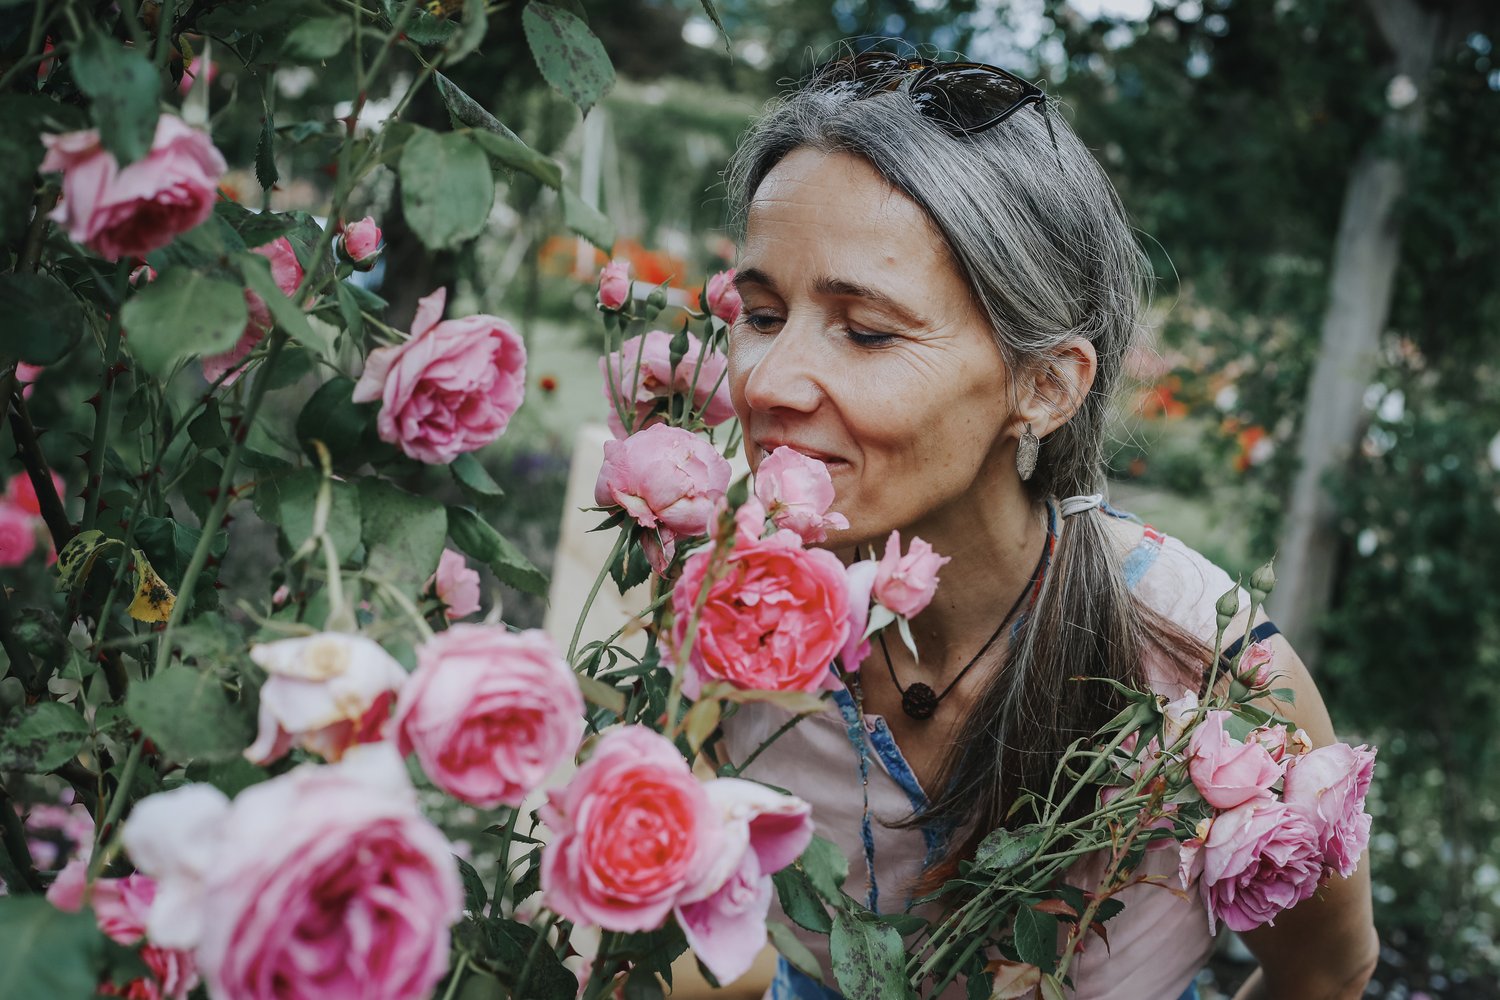 Ana Ličina, aromaterapevtka in ustanoviteljica Aroma Atelierja v Ljubljani, med vrtnicami